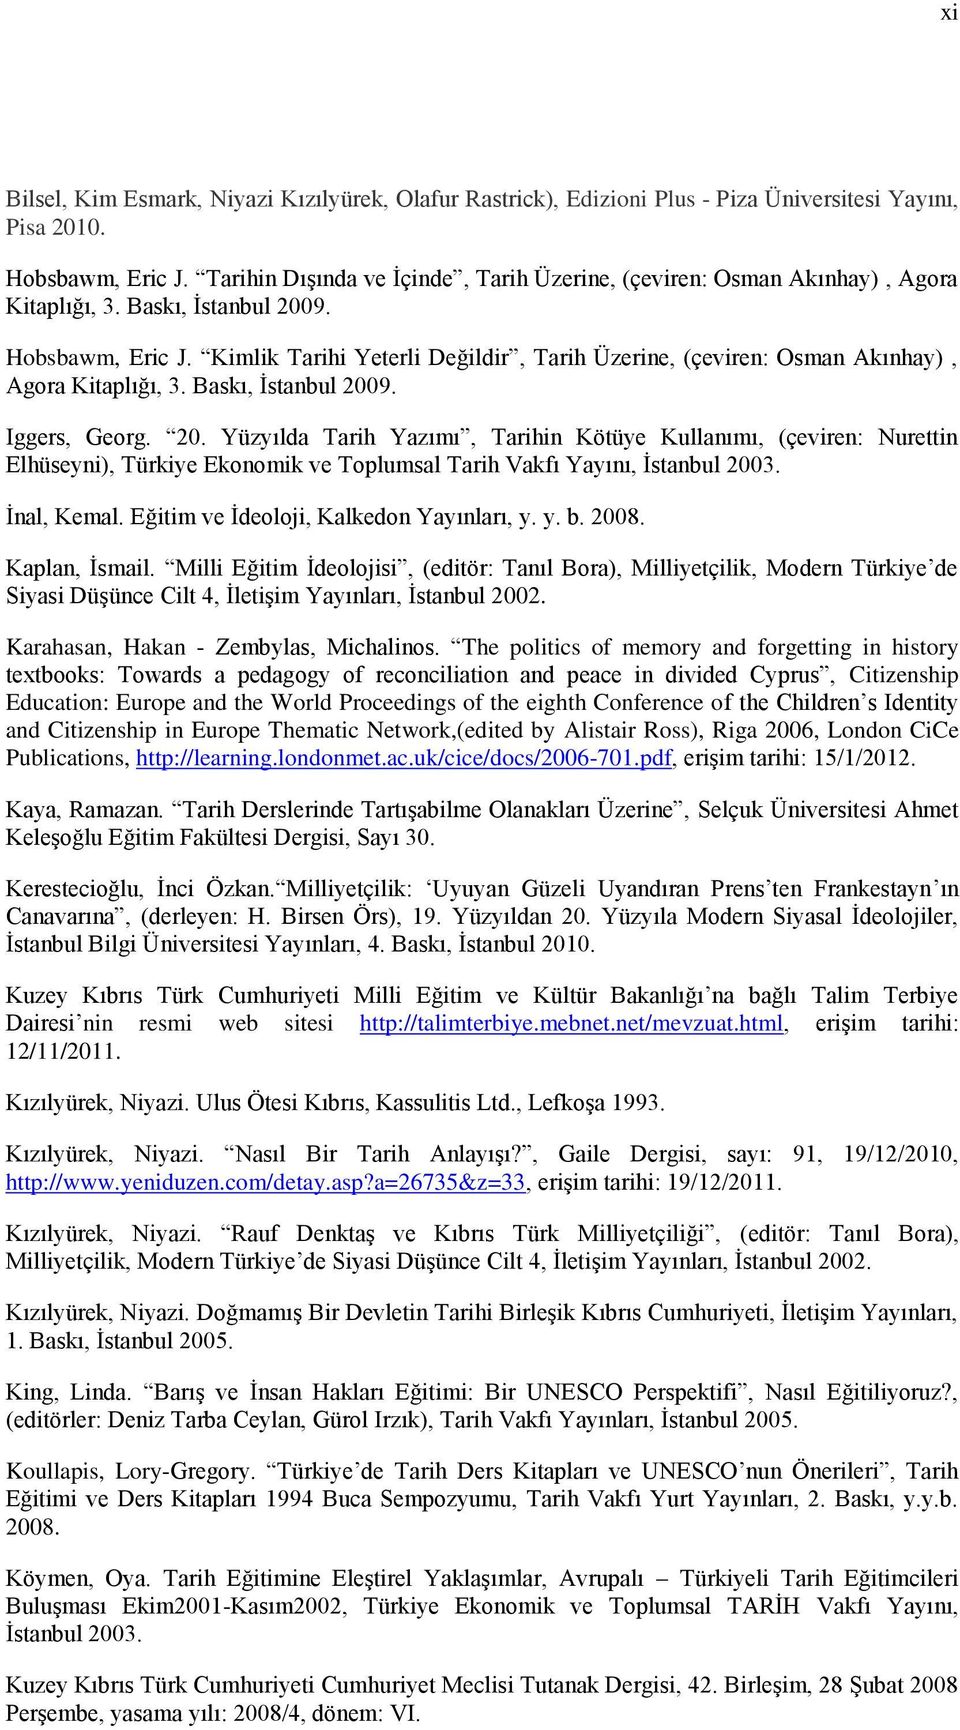 Kimlik Tarihi Yeterli Değildir, Tarih Üzerine, (çeviren: Osman Akınhay), Agora Kitaplığı, 3. Baskı, İstanbul 200